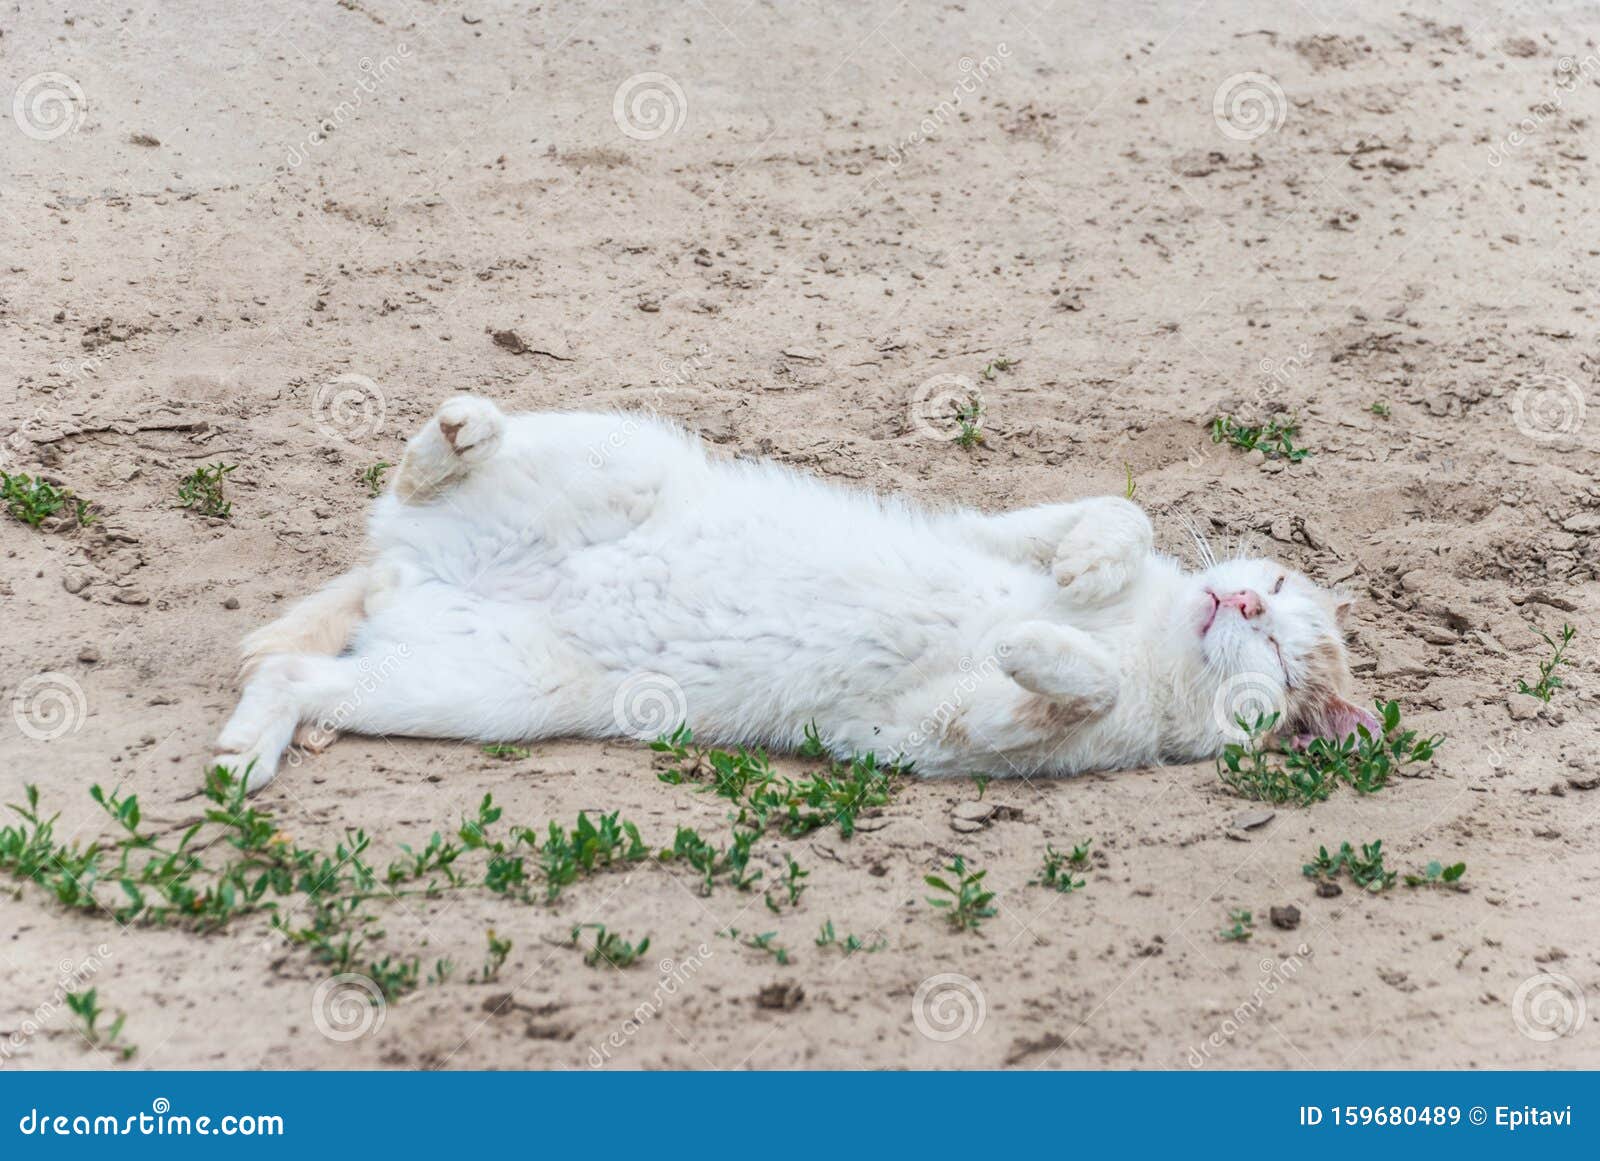 dead white cat